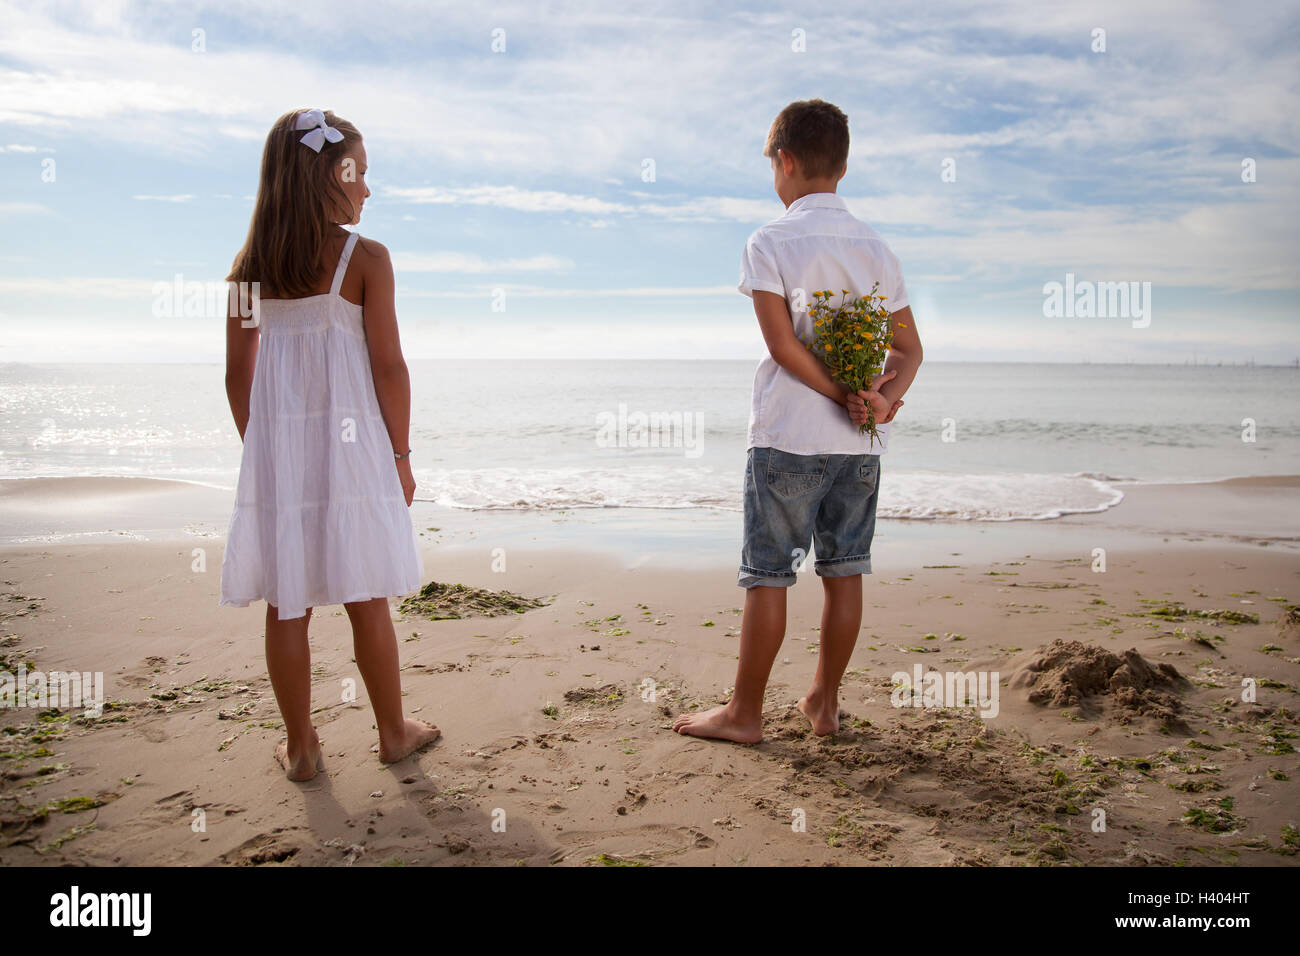 Ragazzo holding fiori alle sue spalle, in piedi accanto alla ragazza sulla spiaggia Foto Stock